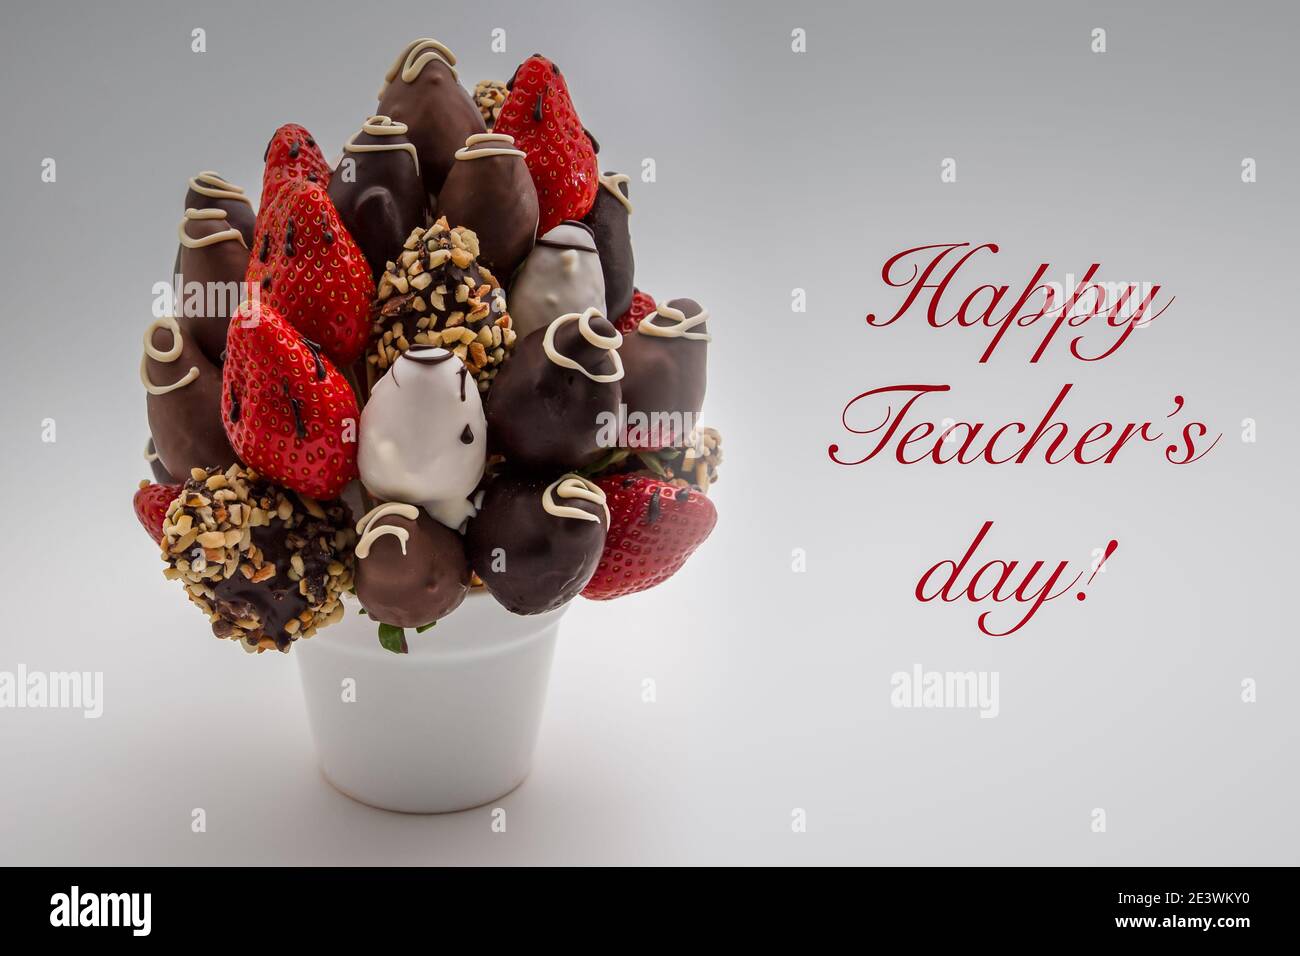 Happy Teacher's Day bigliettino con scritta rossa; UN mazzo di fiori commestibili, arrangiamento di fragole ricoperte di cioccolato isolato su sfondo bianco Foto Stock